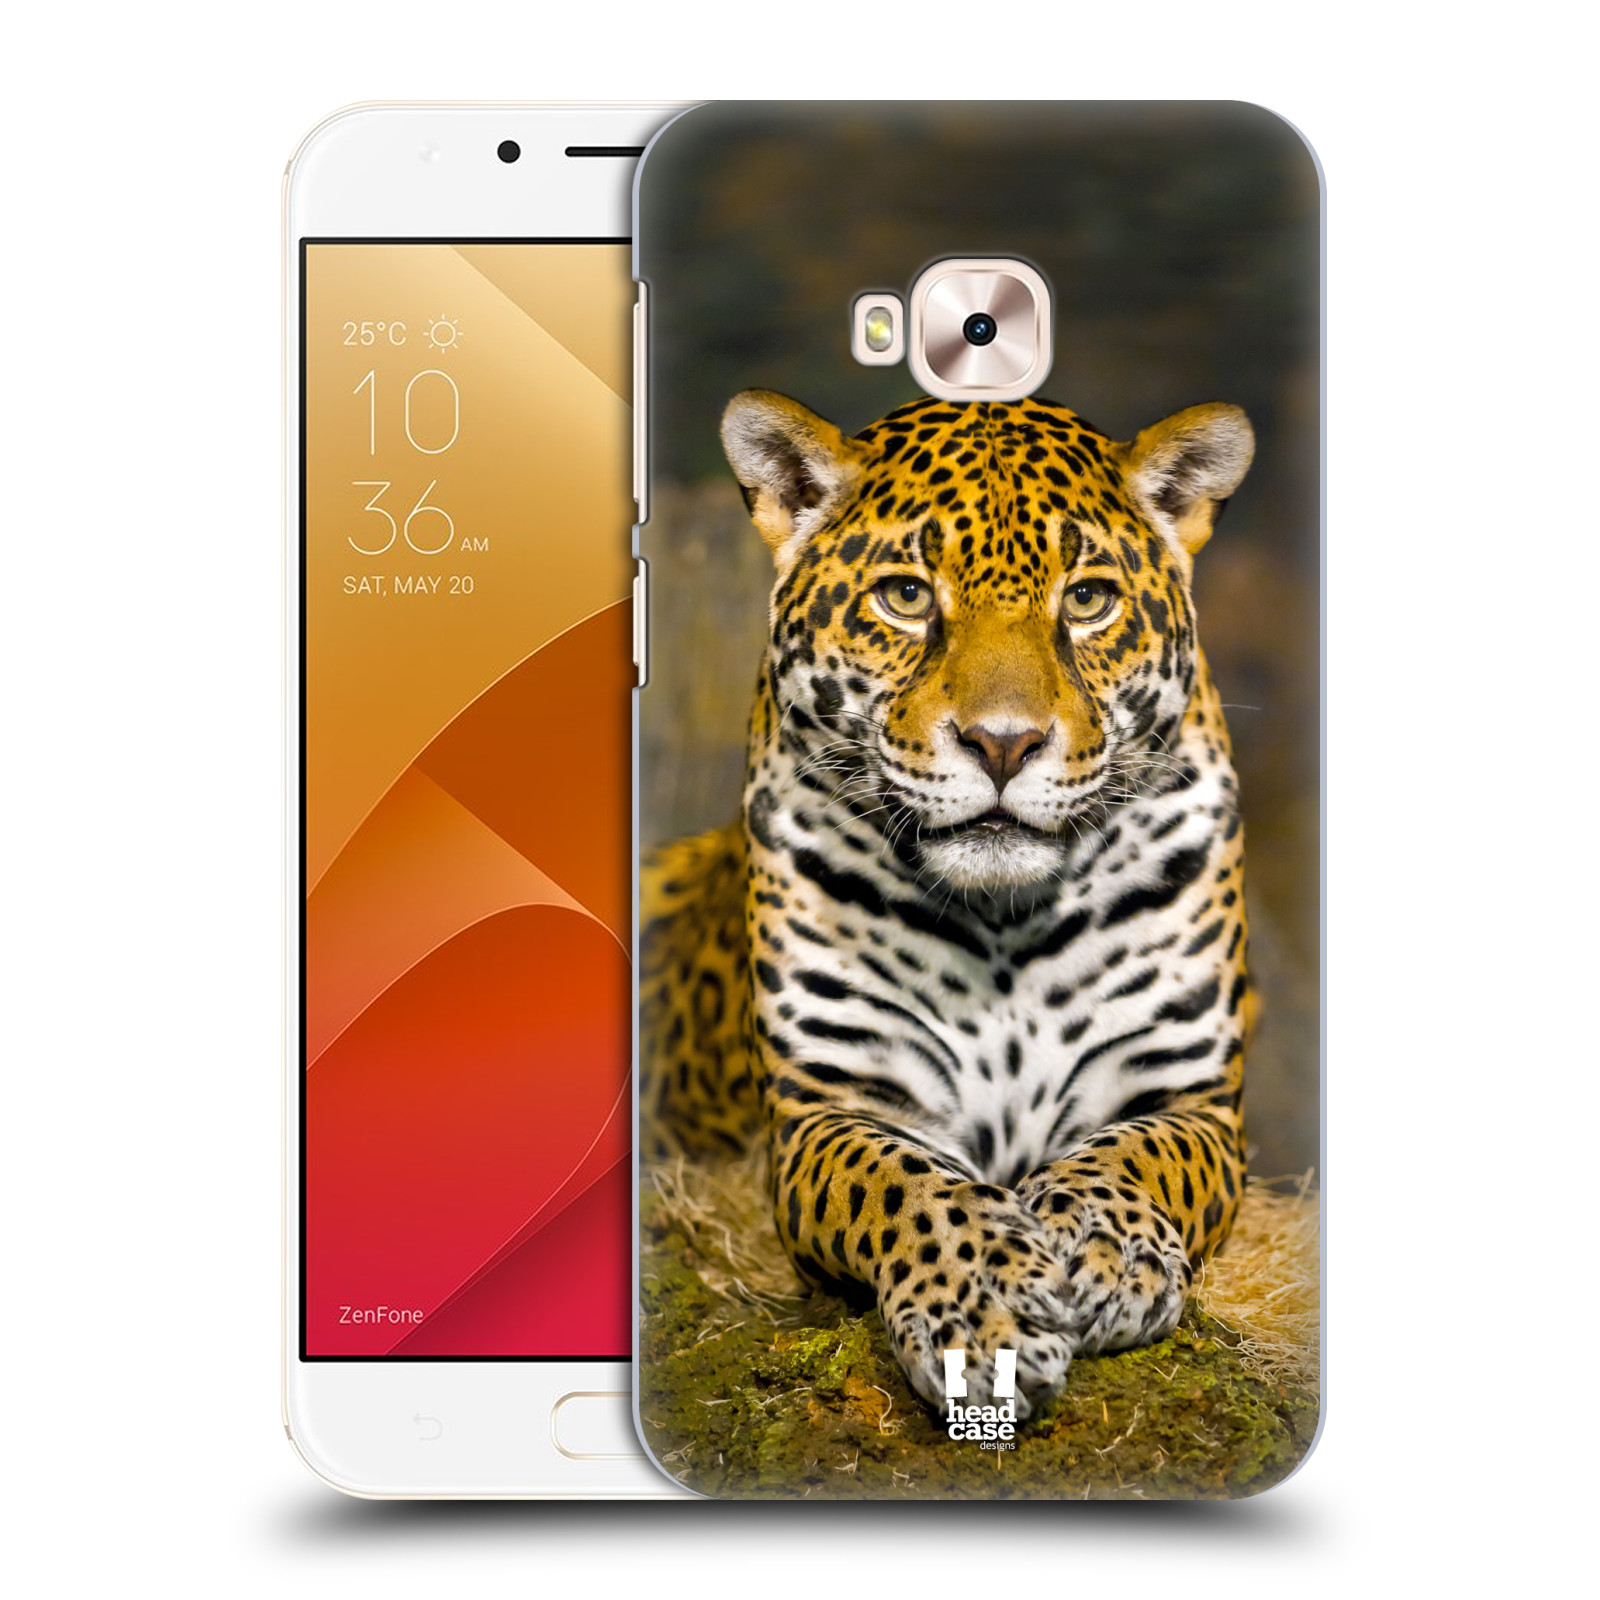 HEAD CASE plastový obal na mobil Asus Zenfone 4 Selfie Pro ZD552KL vzor slavná zvířata foto jaguár